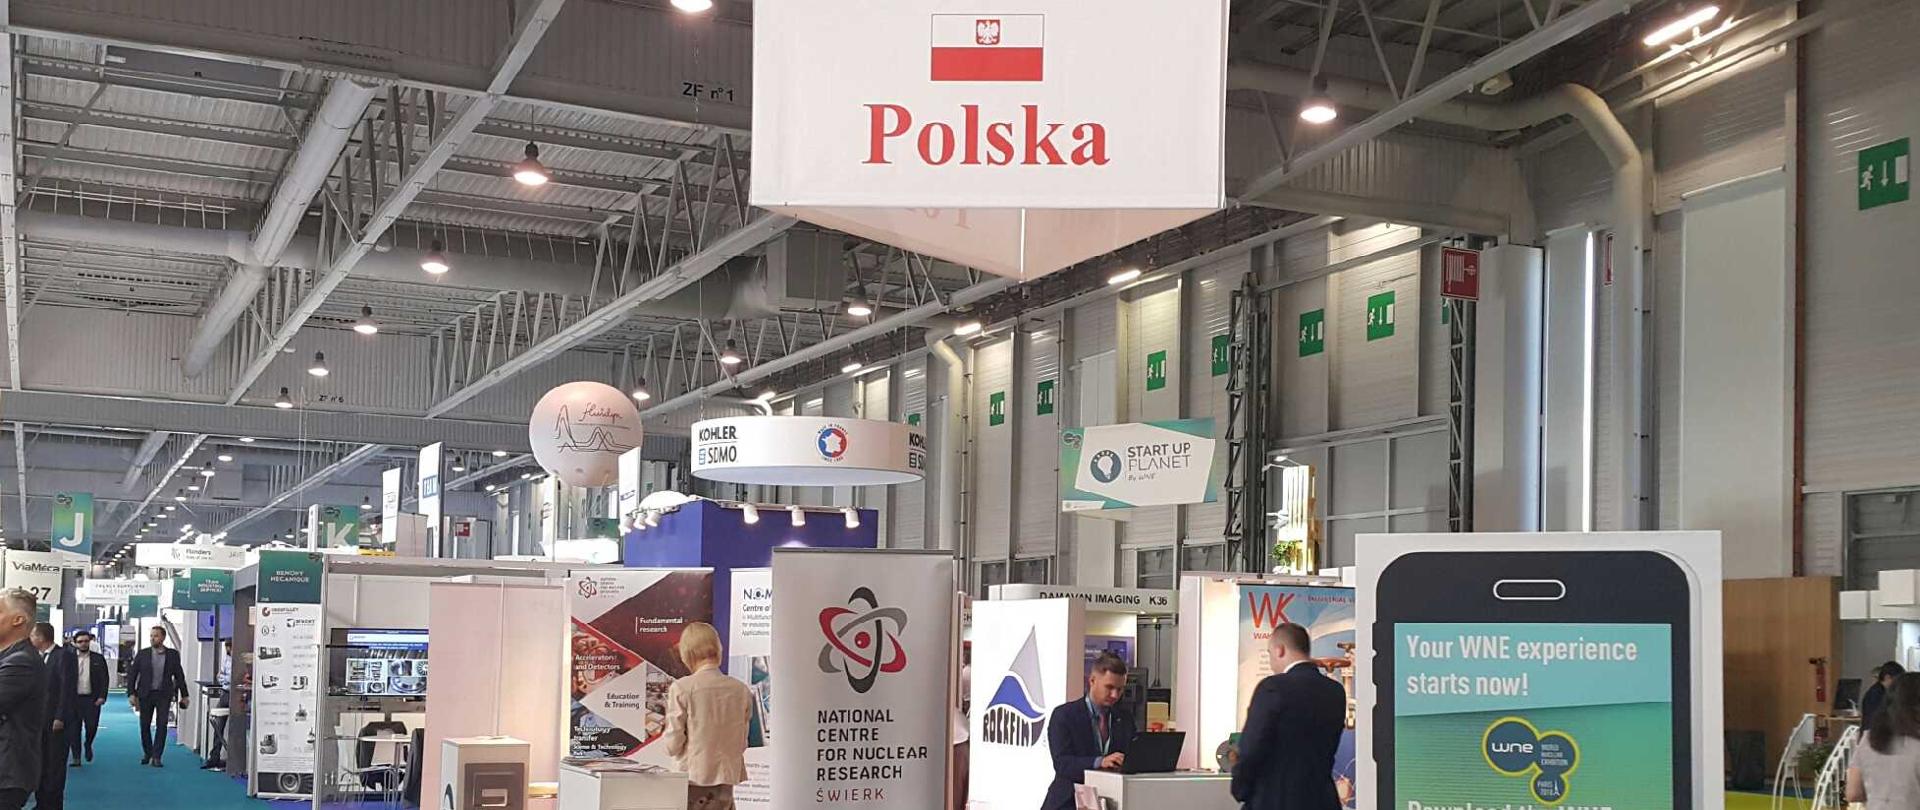 Polskie stoisko na światowej wystawie przemysłu jądrowego World Nuclear Exhibition 26-28 czerwca 2018 r. w Paryżu